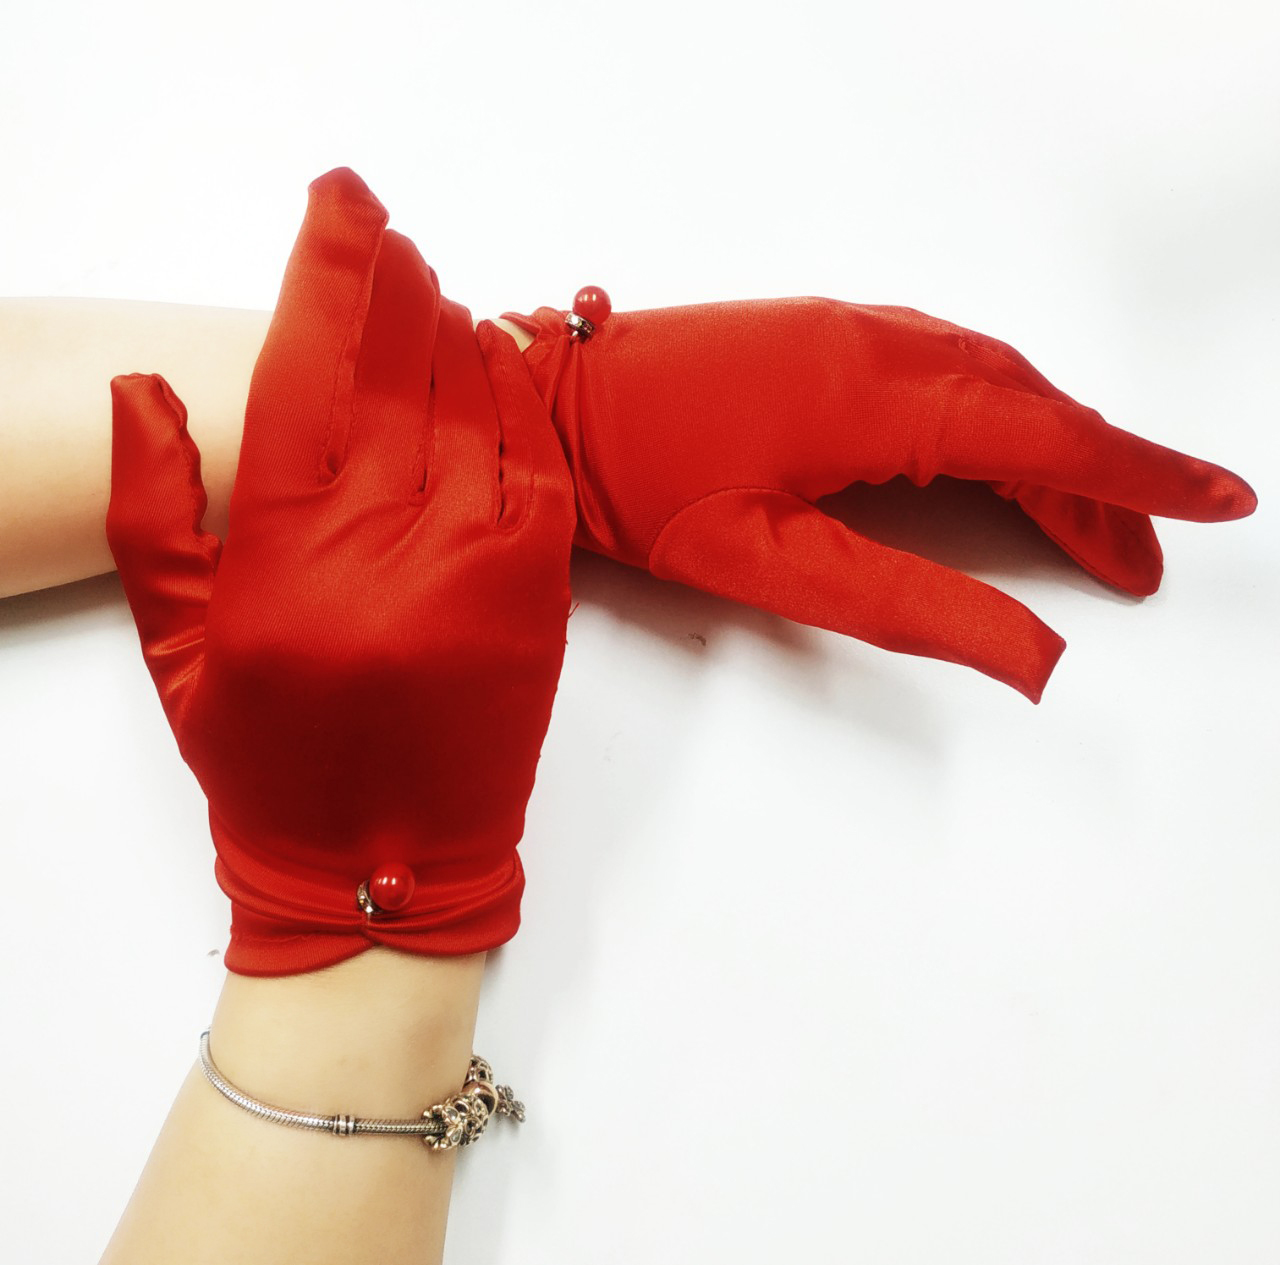 Găng tay lụa bóng sang trọng màu đỏ cho Cô dâu và Dạ hội, đi tiệc, sự kiện, lễ hội, chụp ảnh MS: 43546